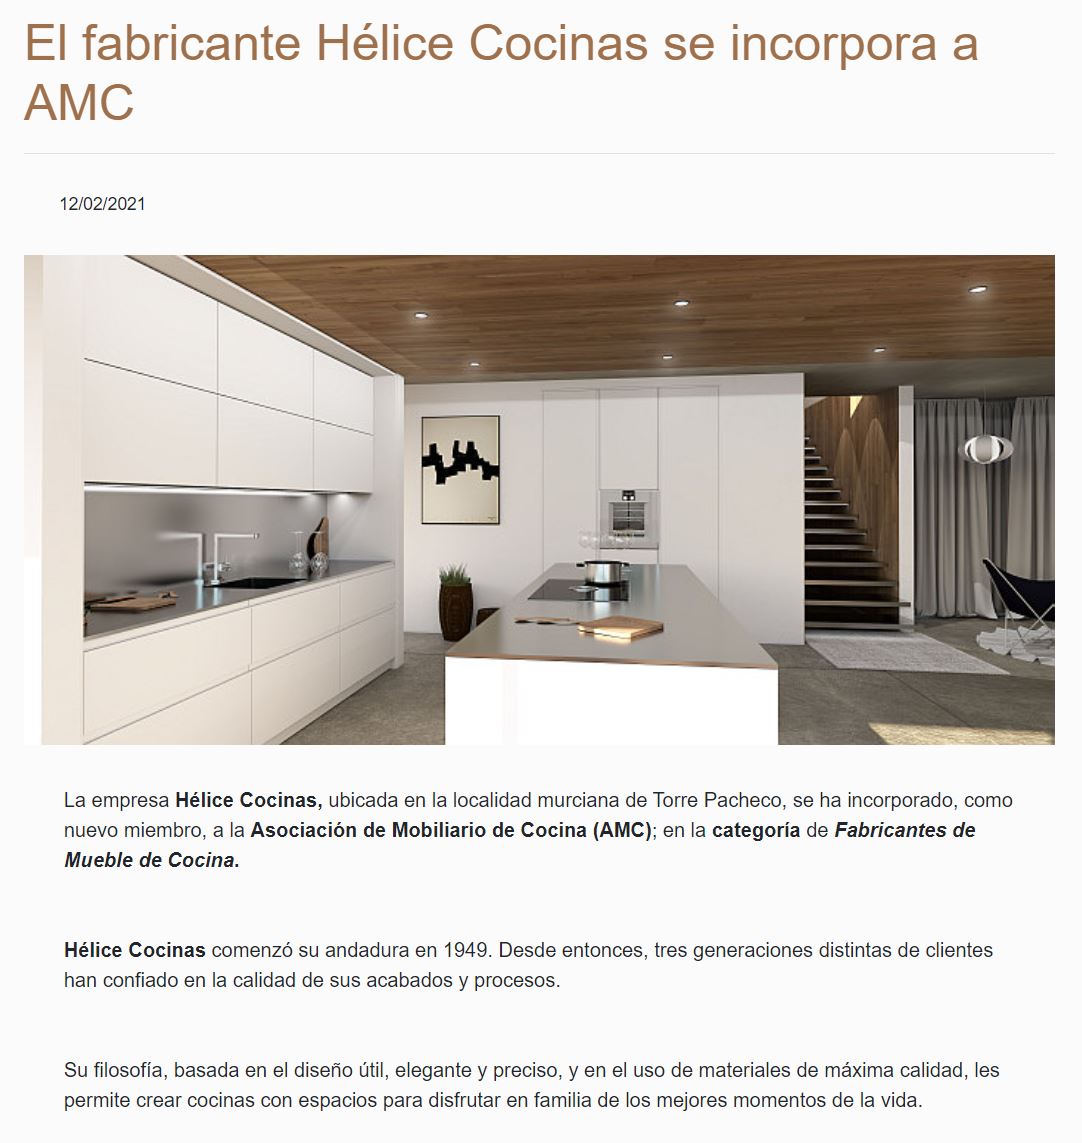 helice-cocinas-amc-cocina-fabricante-2021